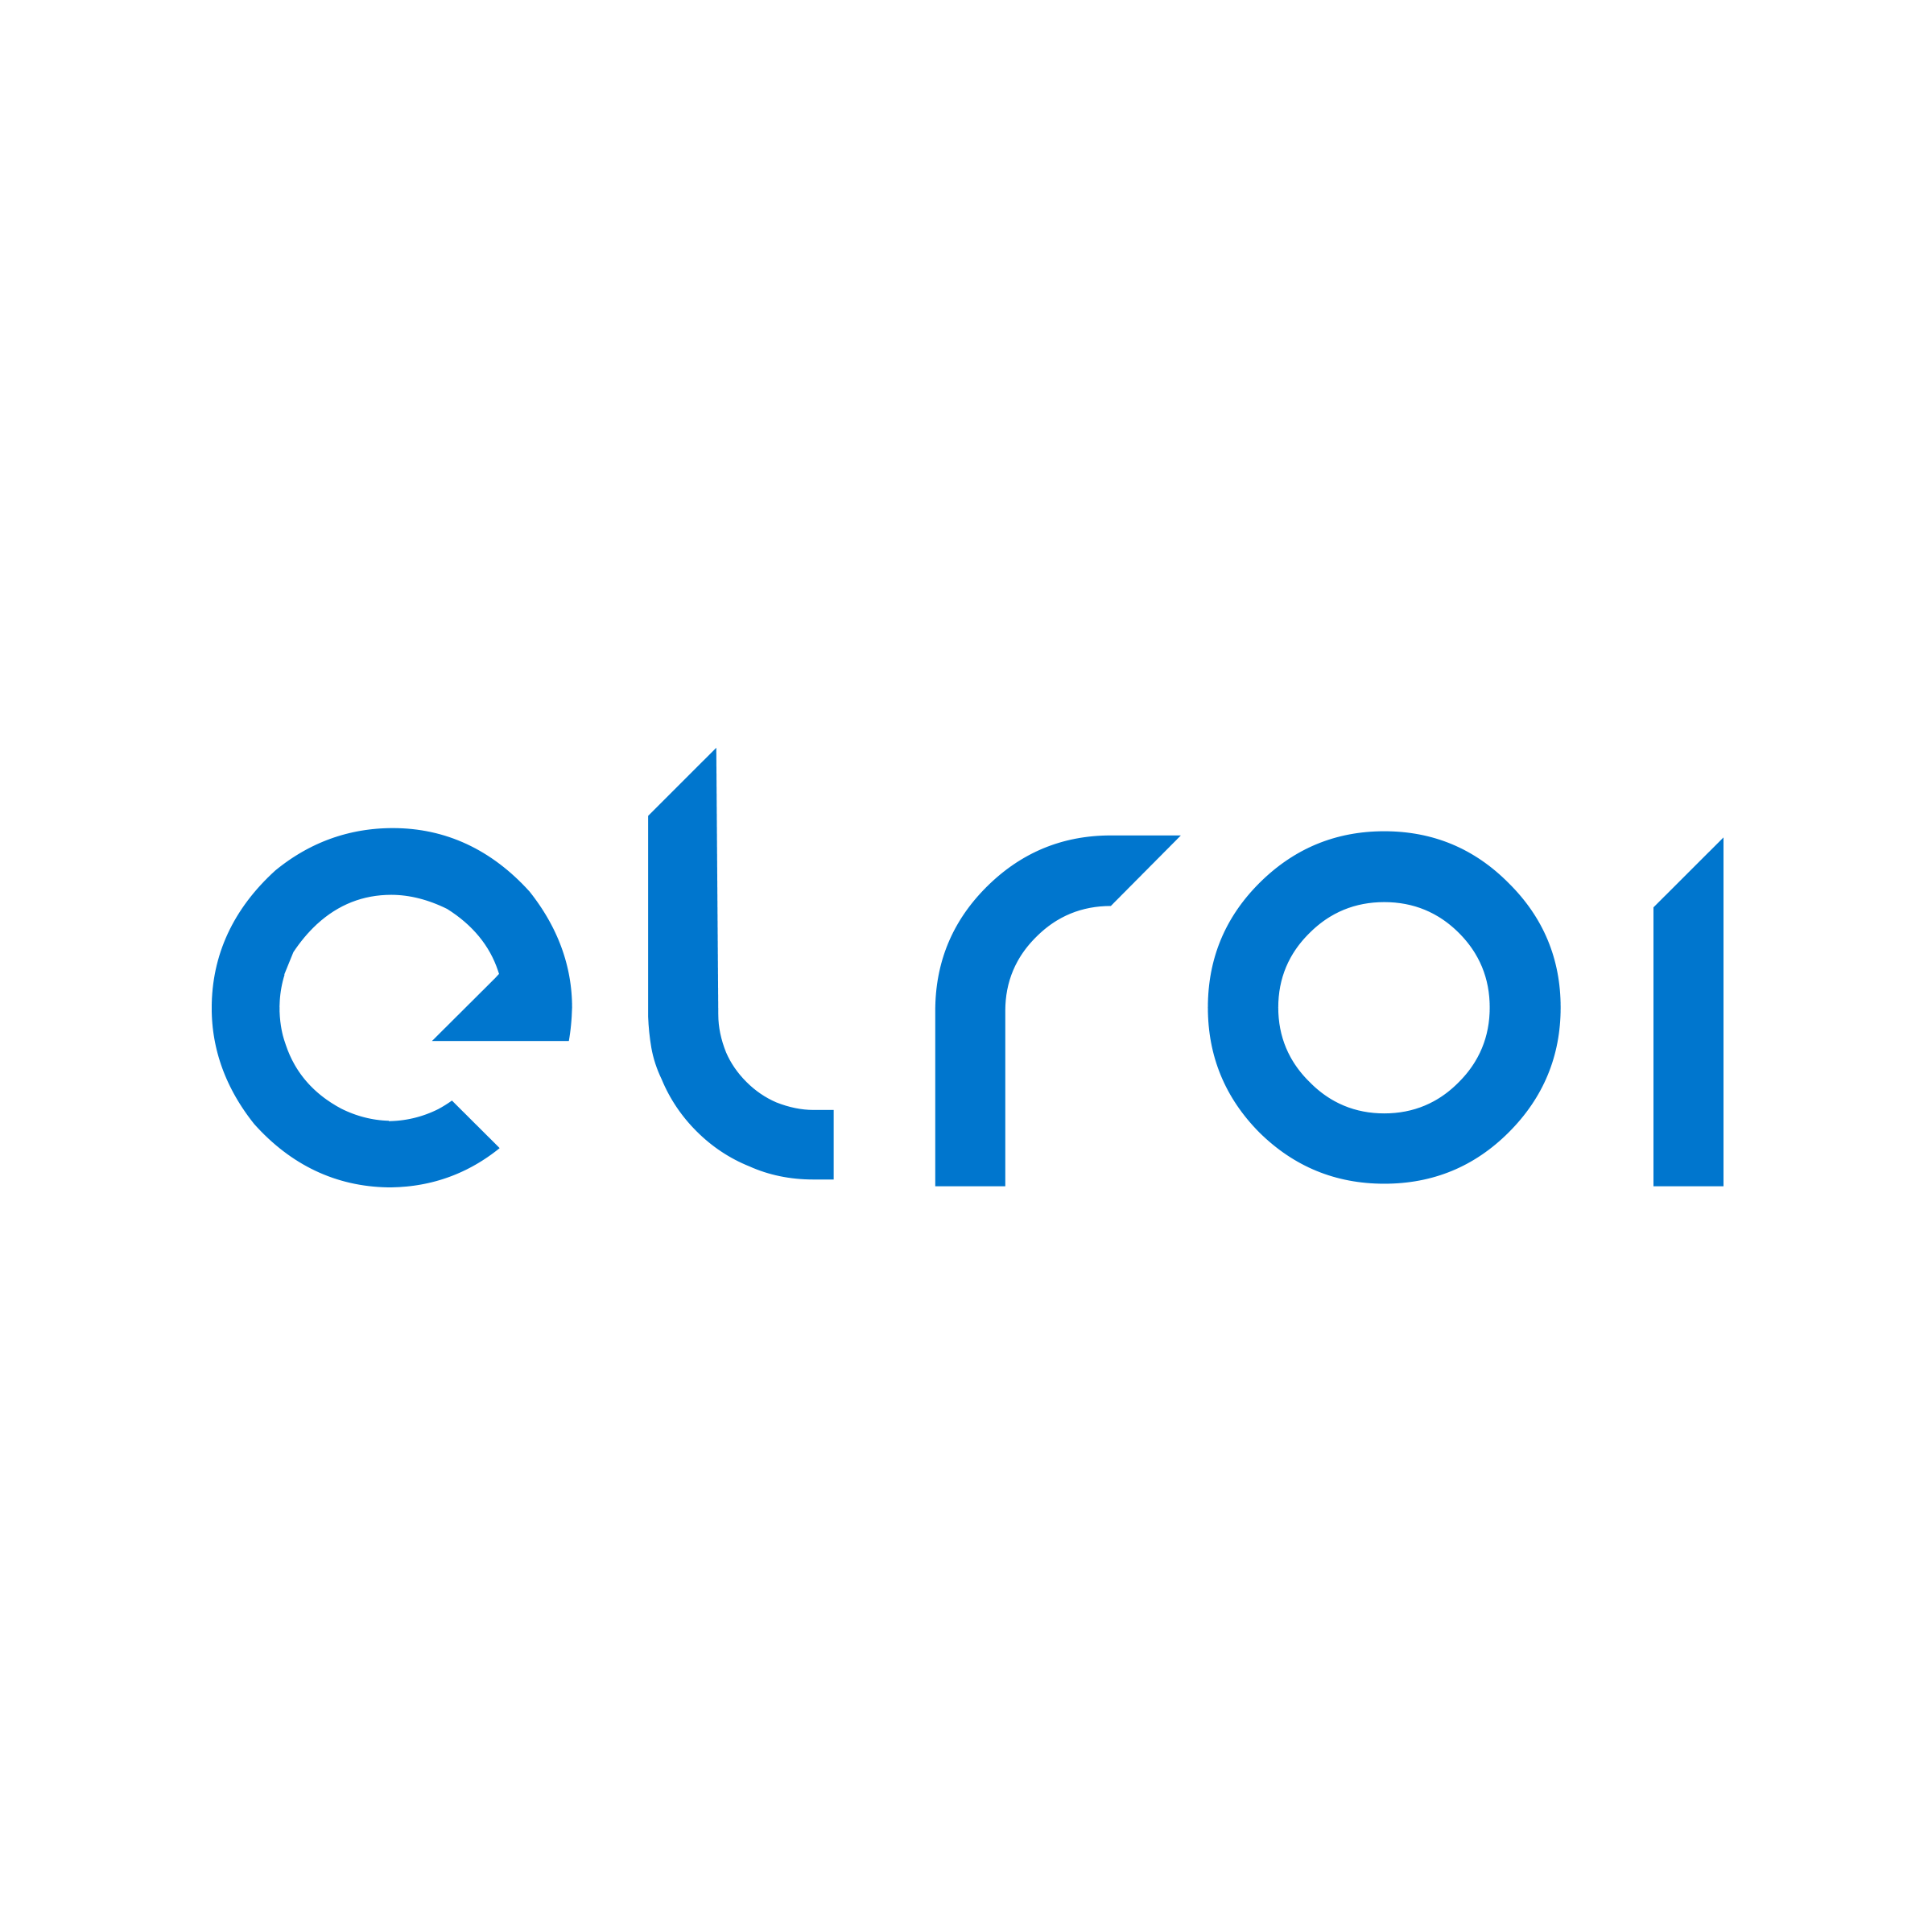 Elroi : Brand Short Description Type Here.